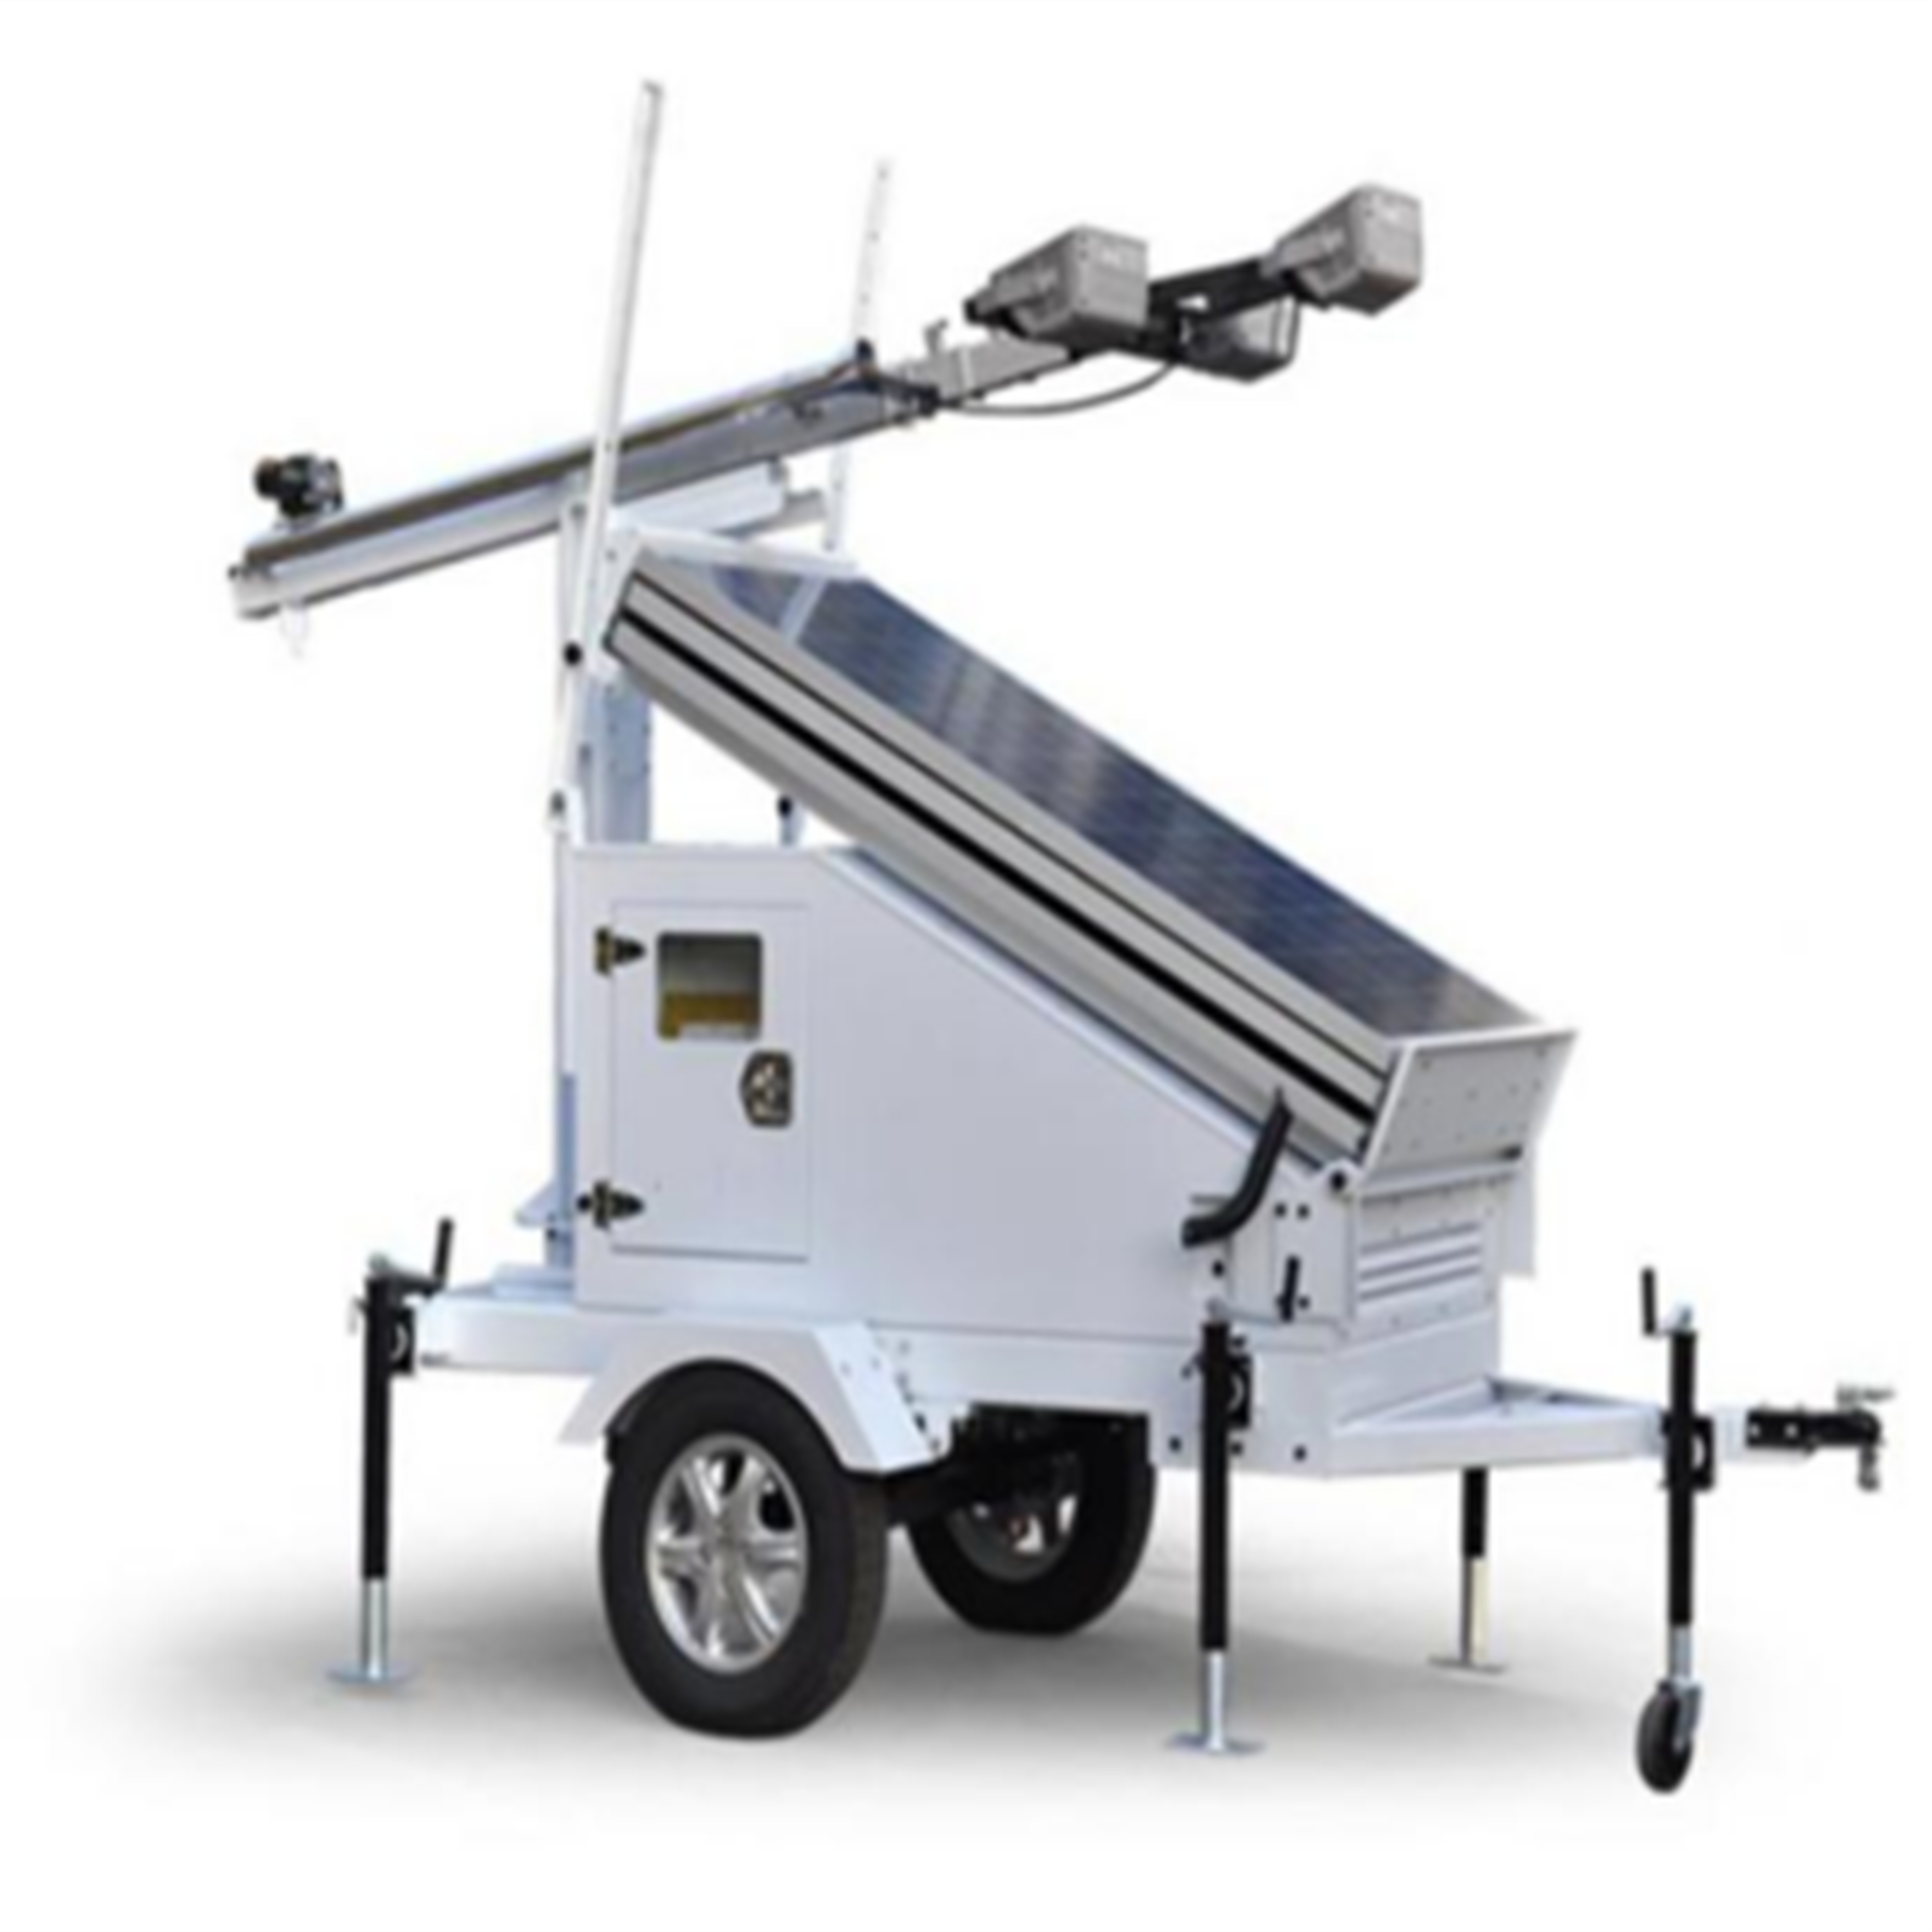  Portable solar energy lighting trailer			